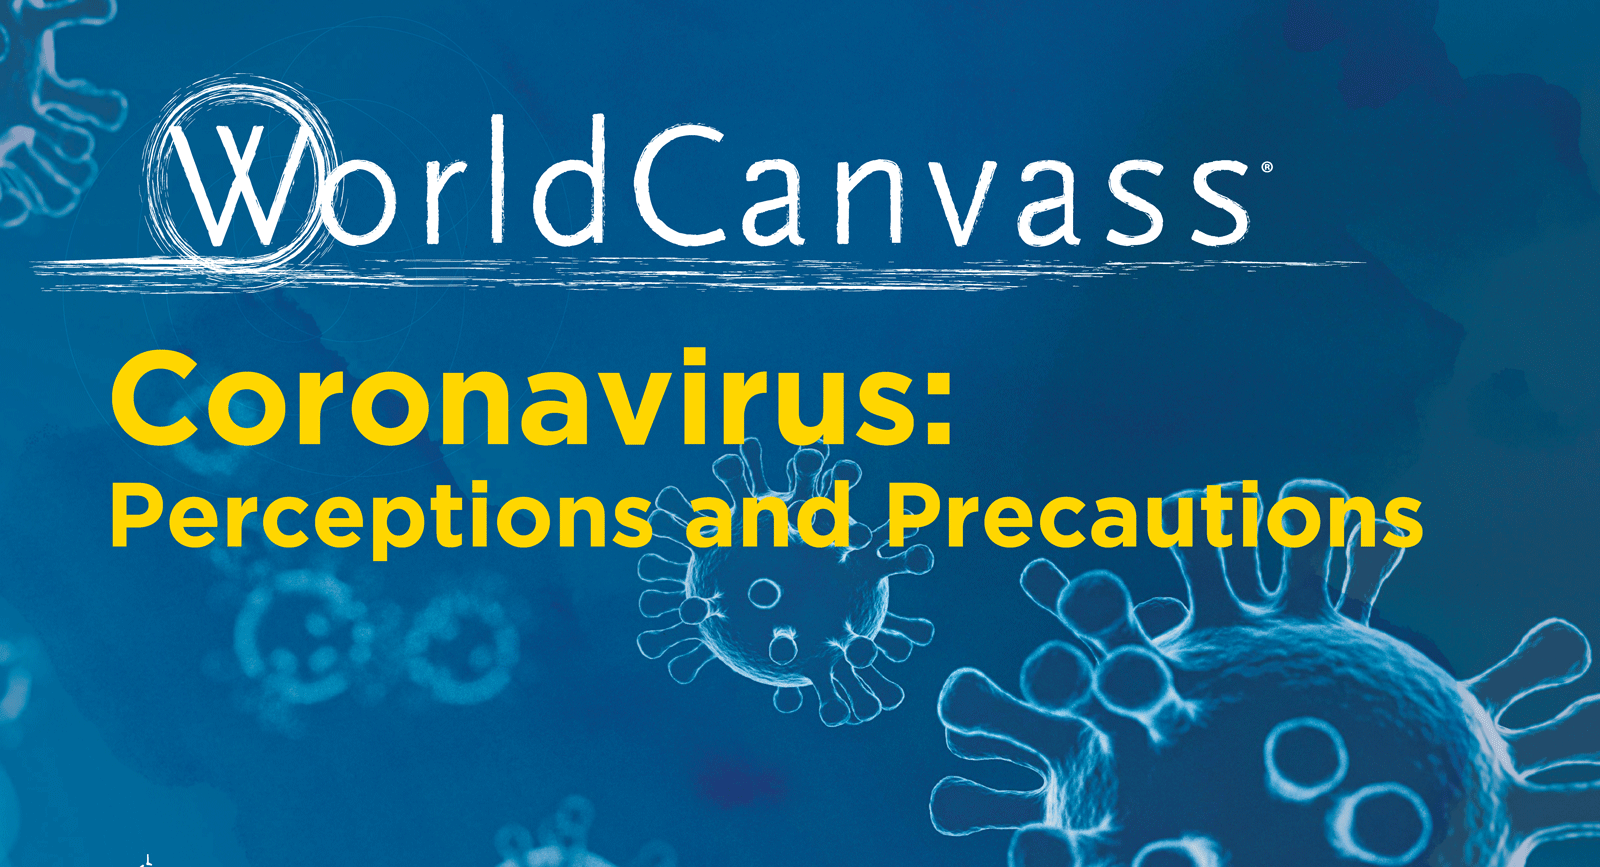 WorldCanvass Coronavirus Perceptions and Precautions